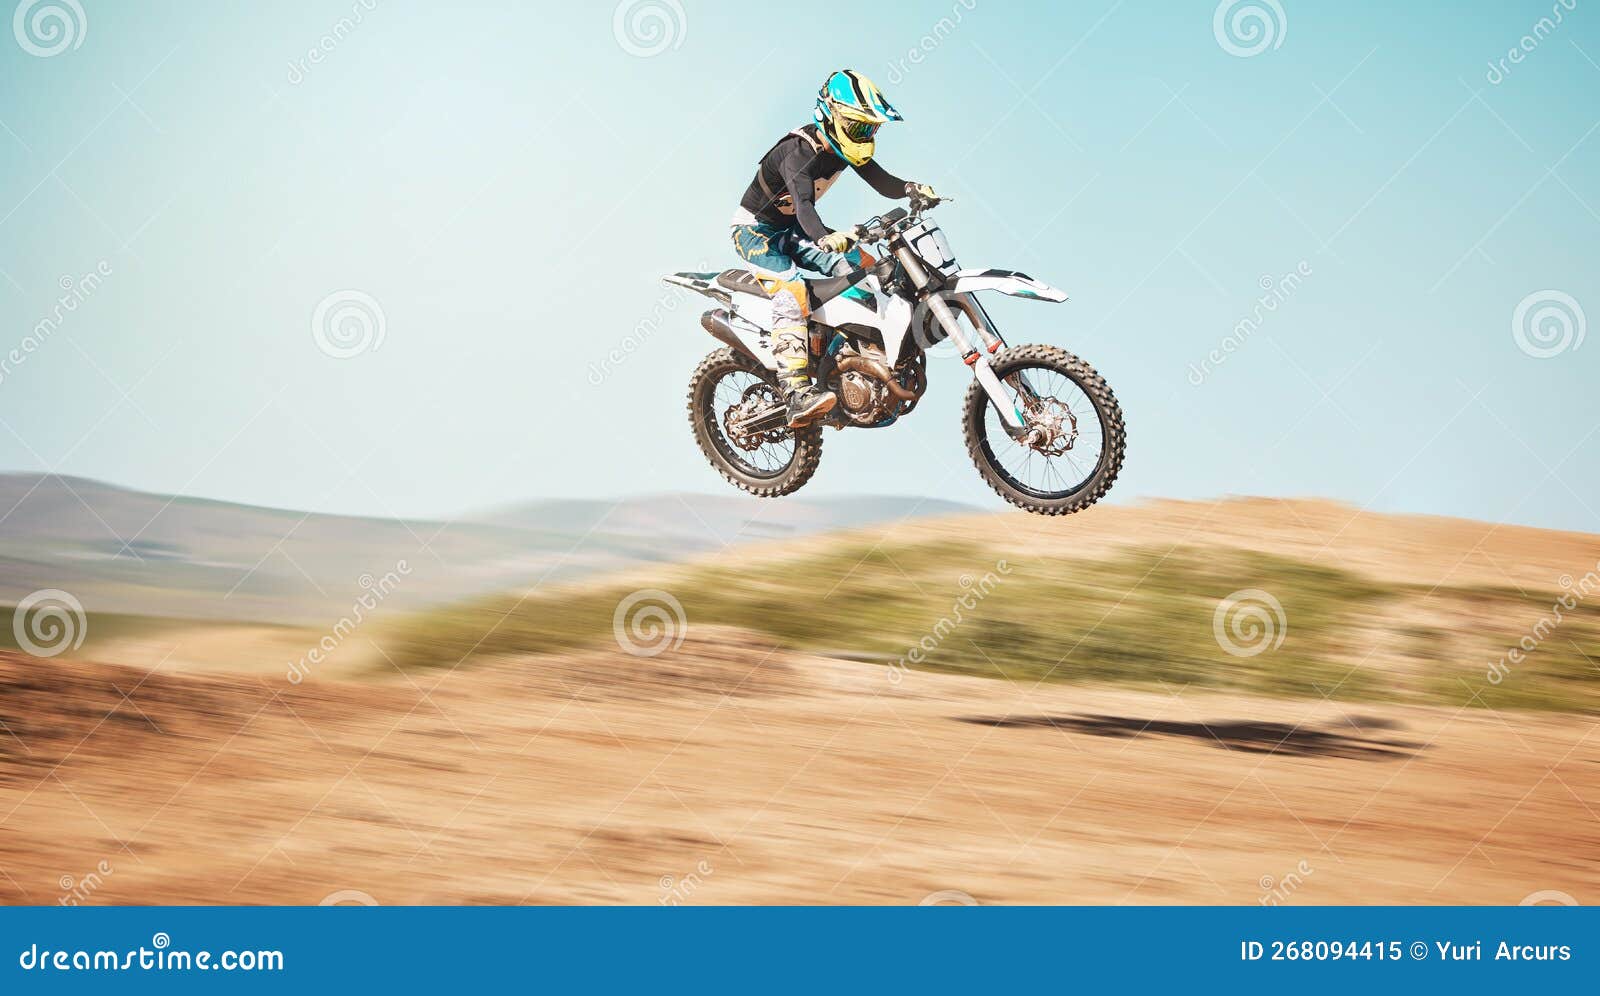 Esporte de moto e ação com sujeira para competição com potência ou